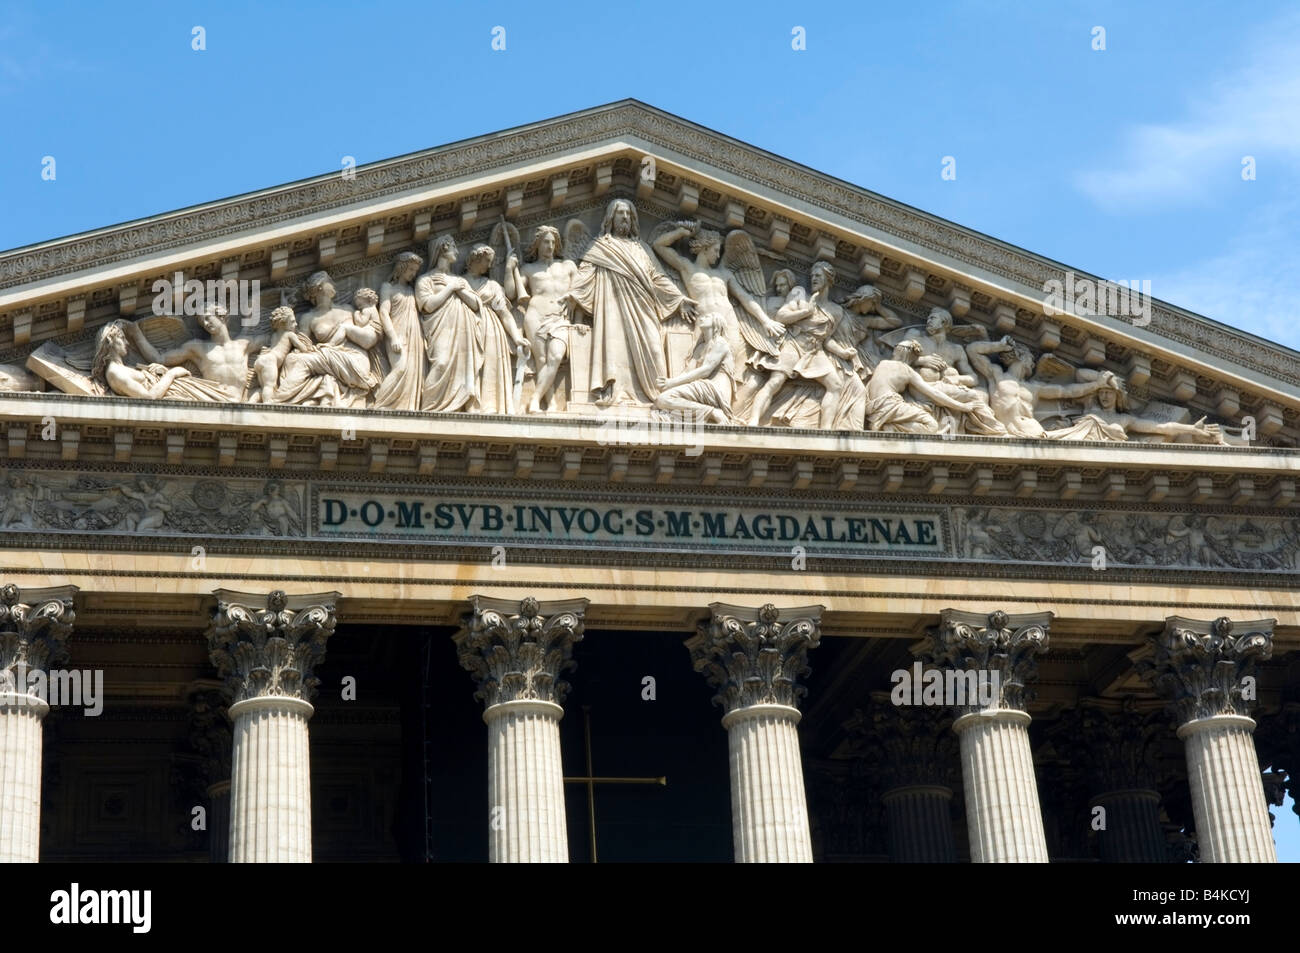 Eglise de La Madeleine showing detail of the pediment frieze depicting the Last Judgement, Paris Stock Photo